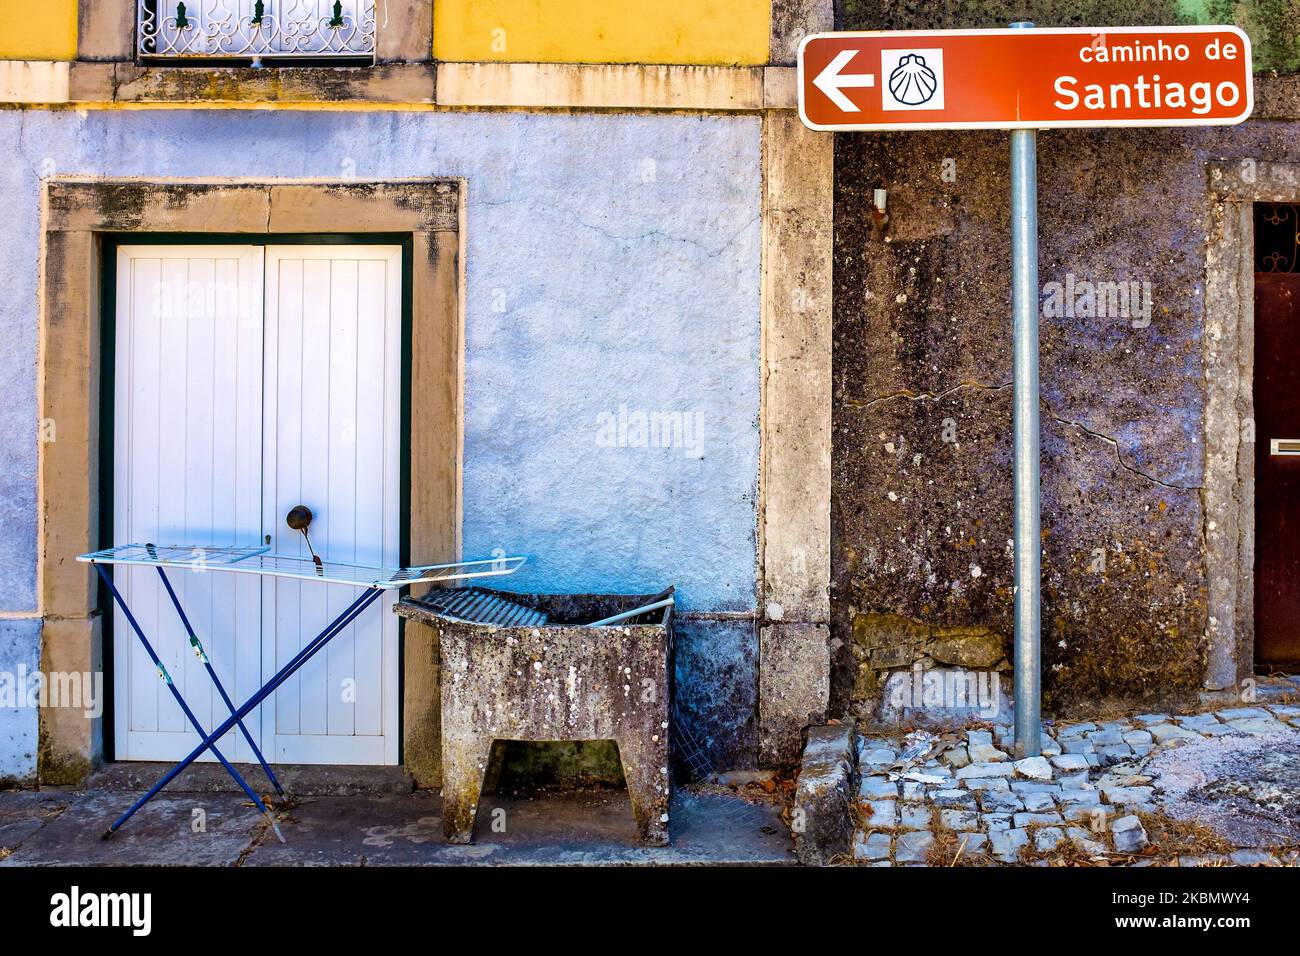 Direction sign for the Caminho de Santiago, Alvorge, Portugal Stock Photo